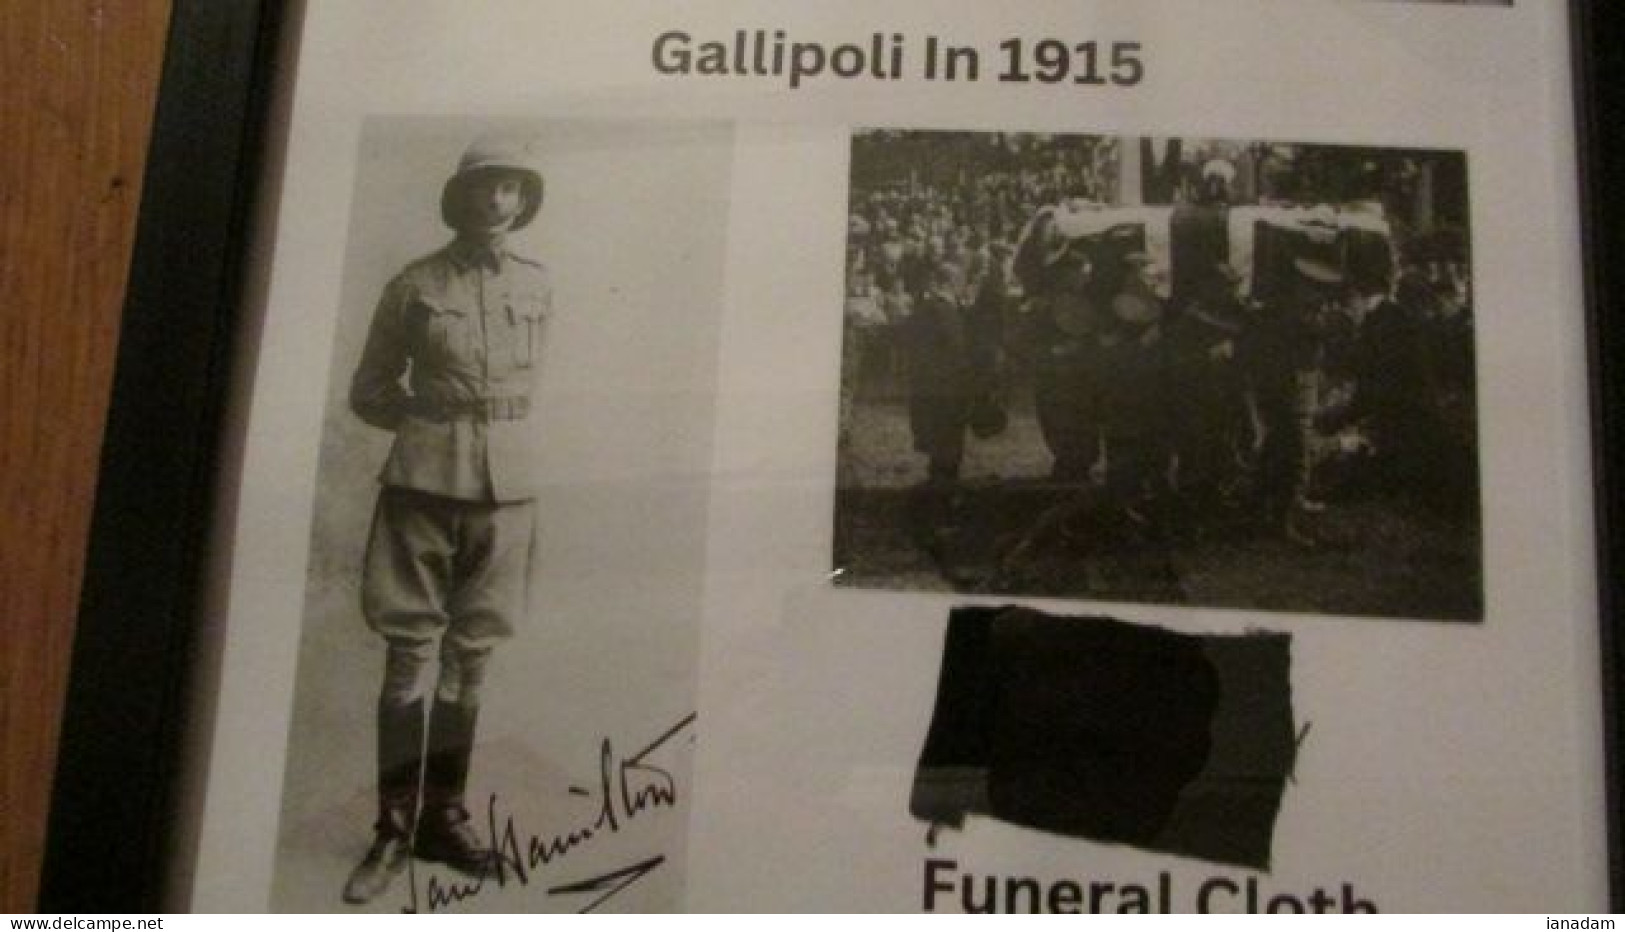 General Ian Hamilton Burial Cloth FRAMED Gallipoli - 1914-18